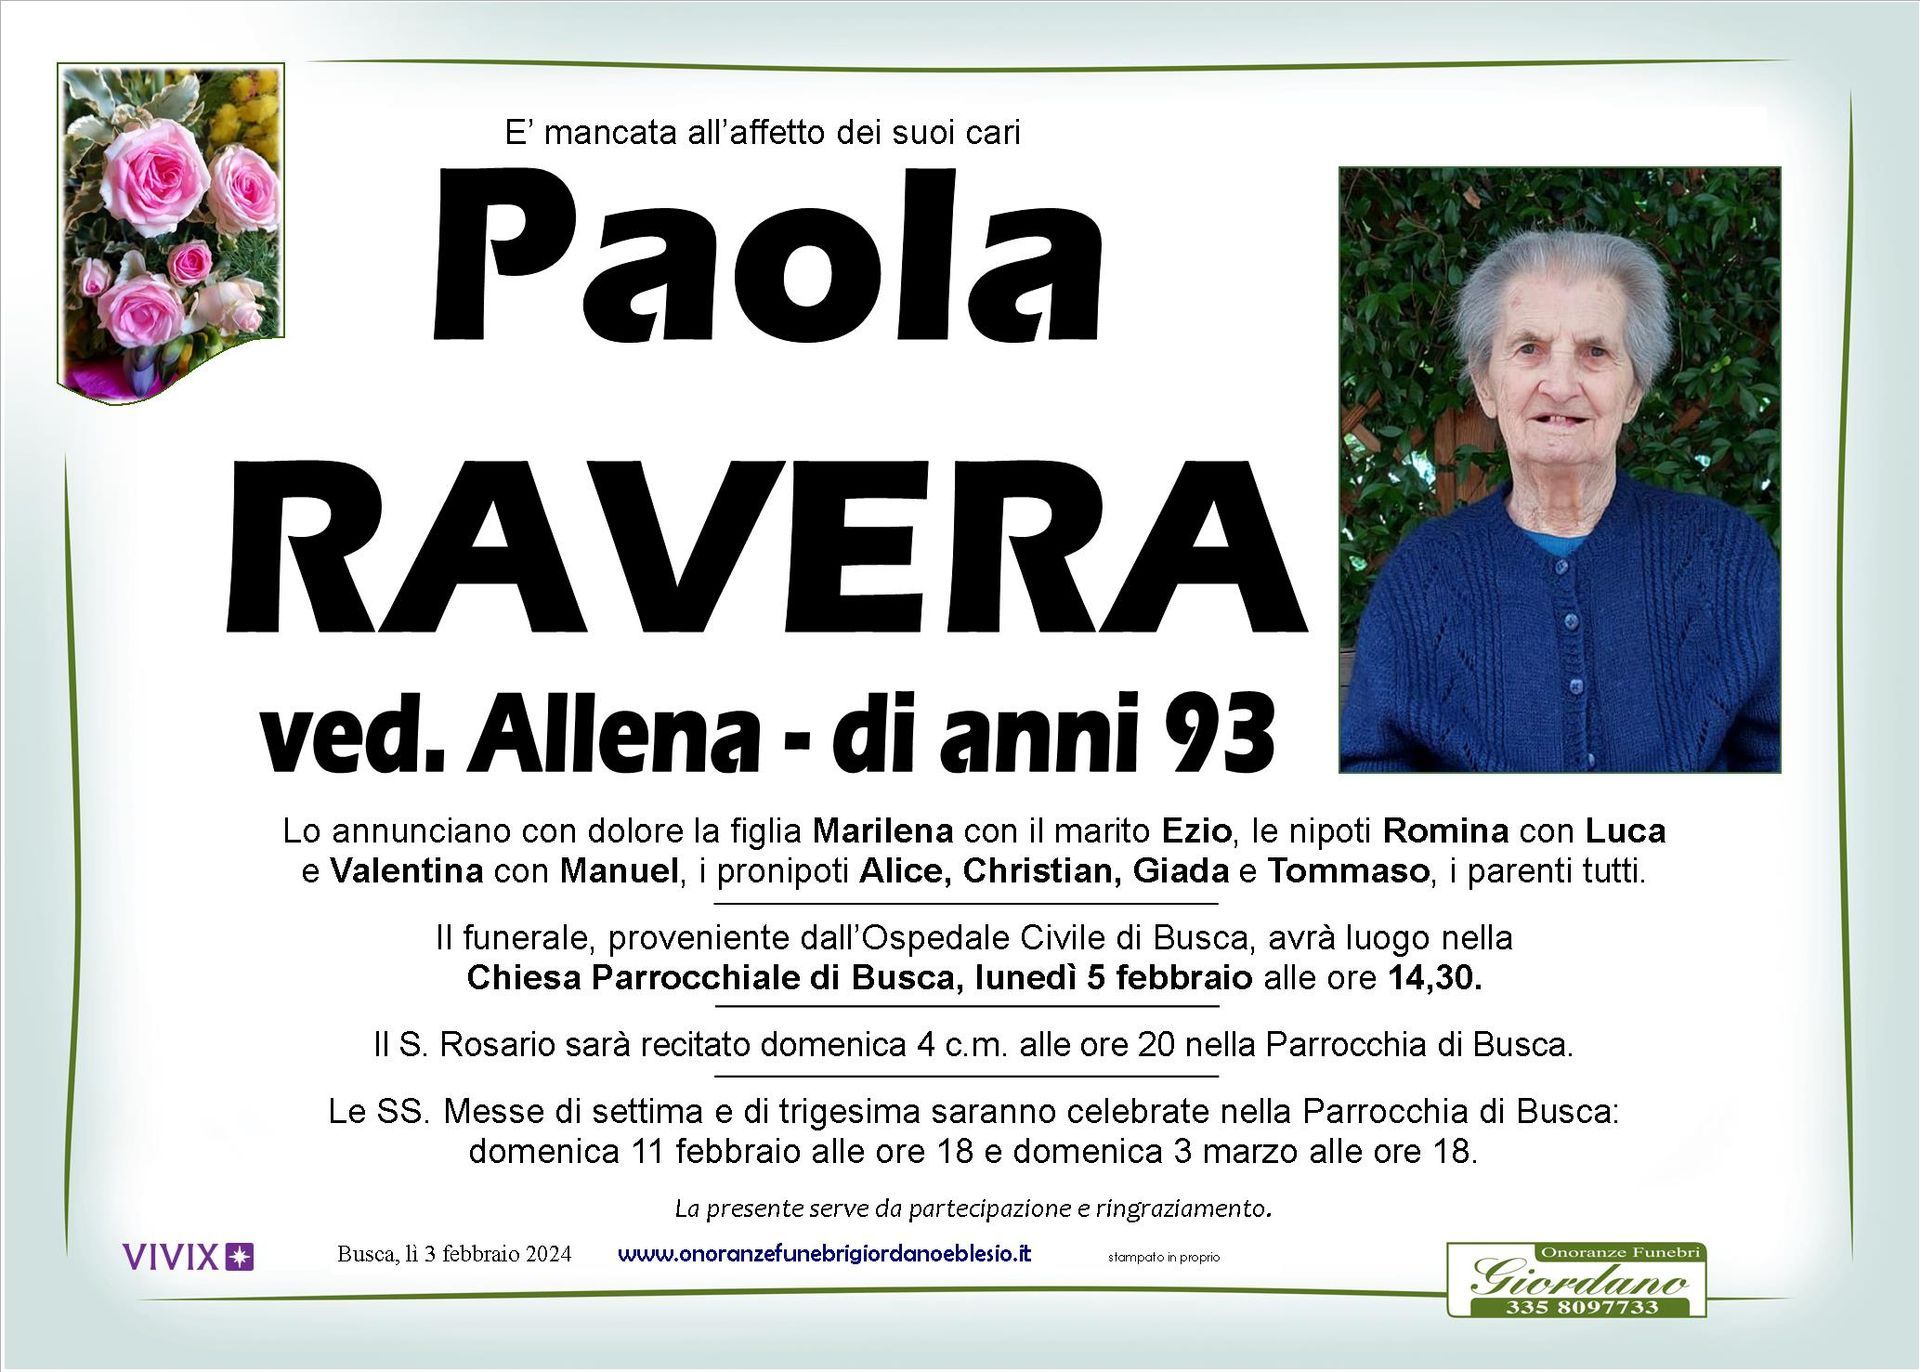 necrologio RAVERA Paola ved. Allena